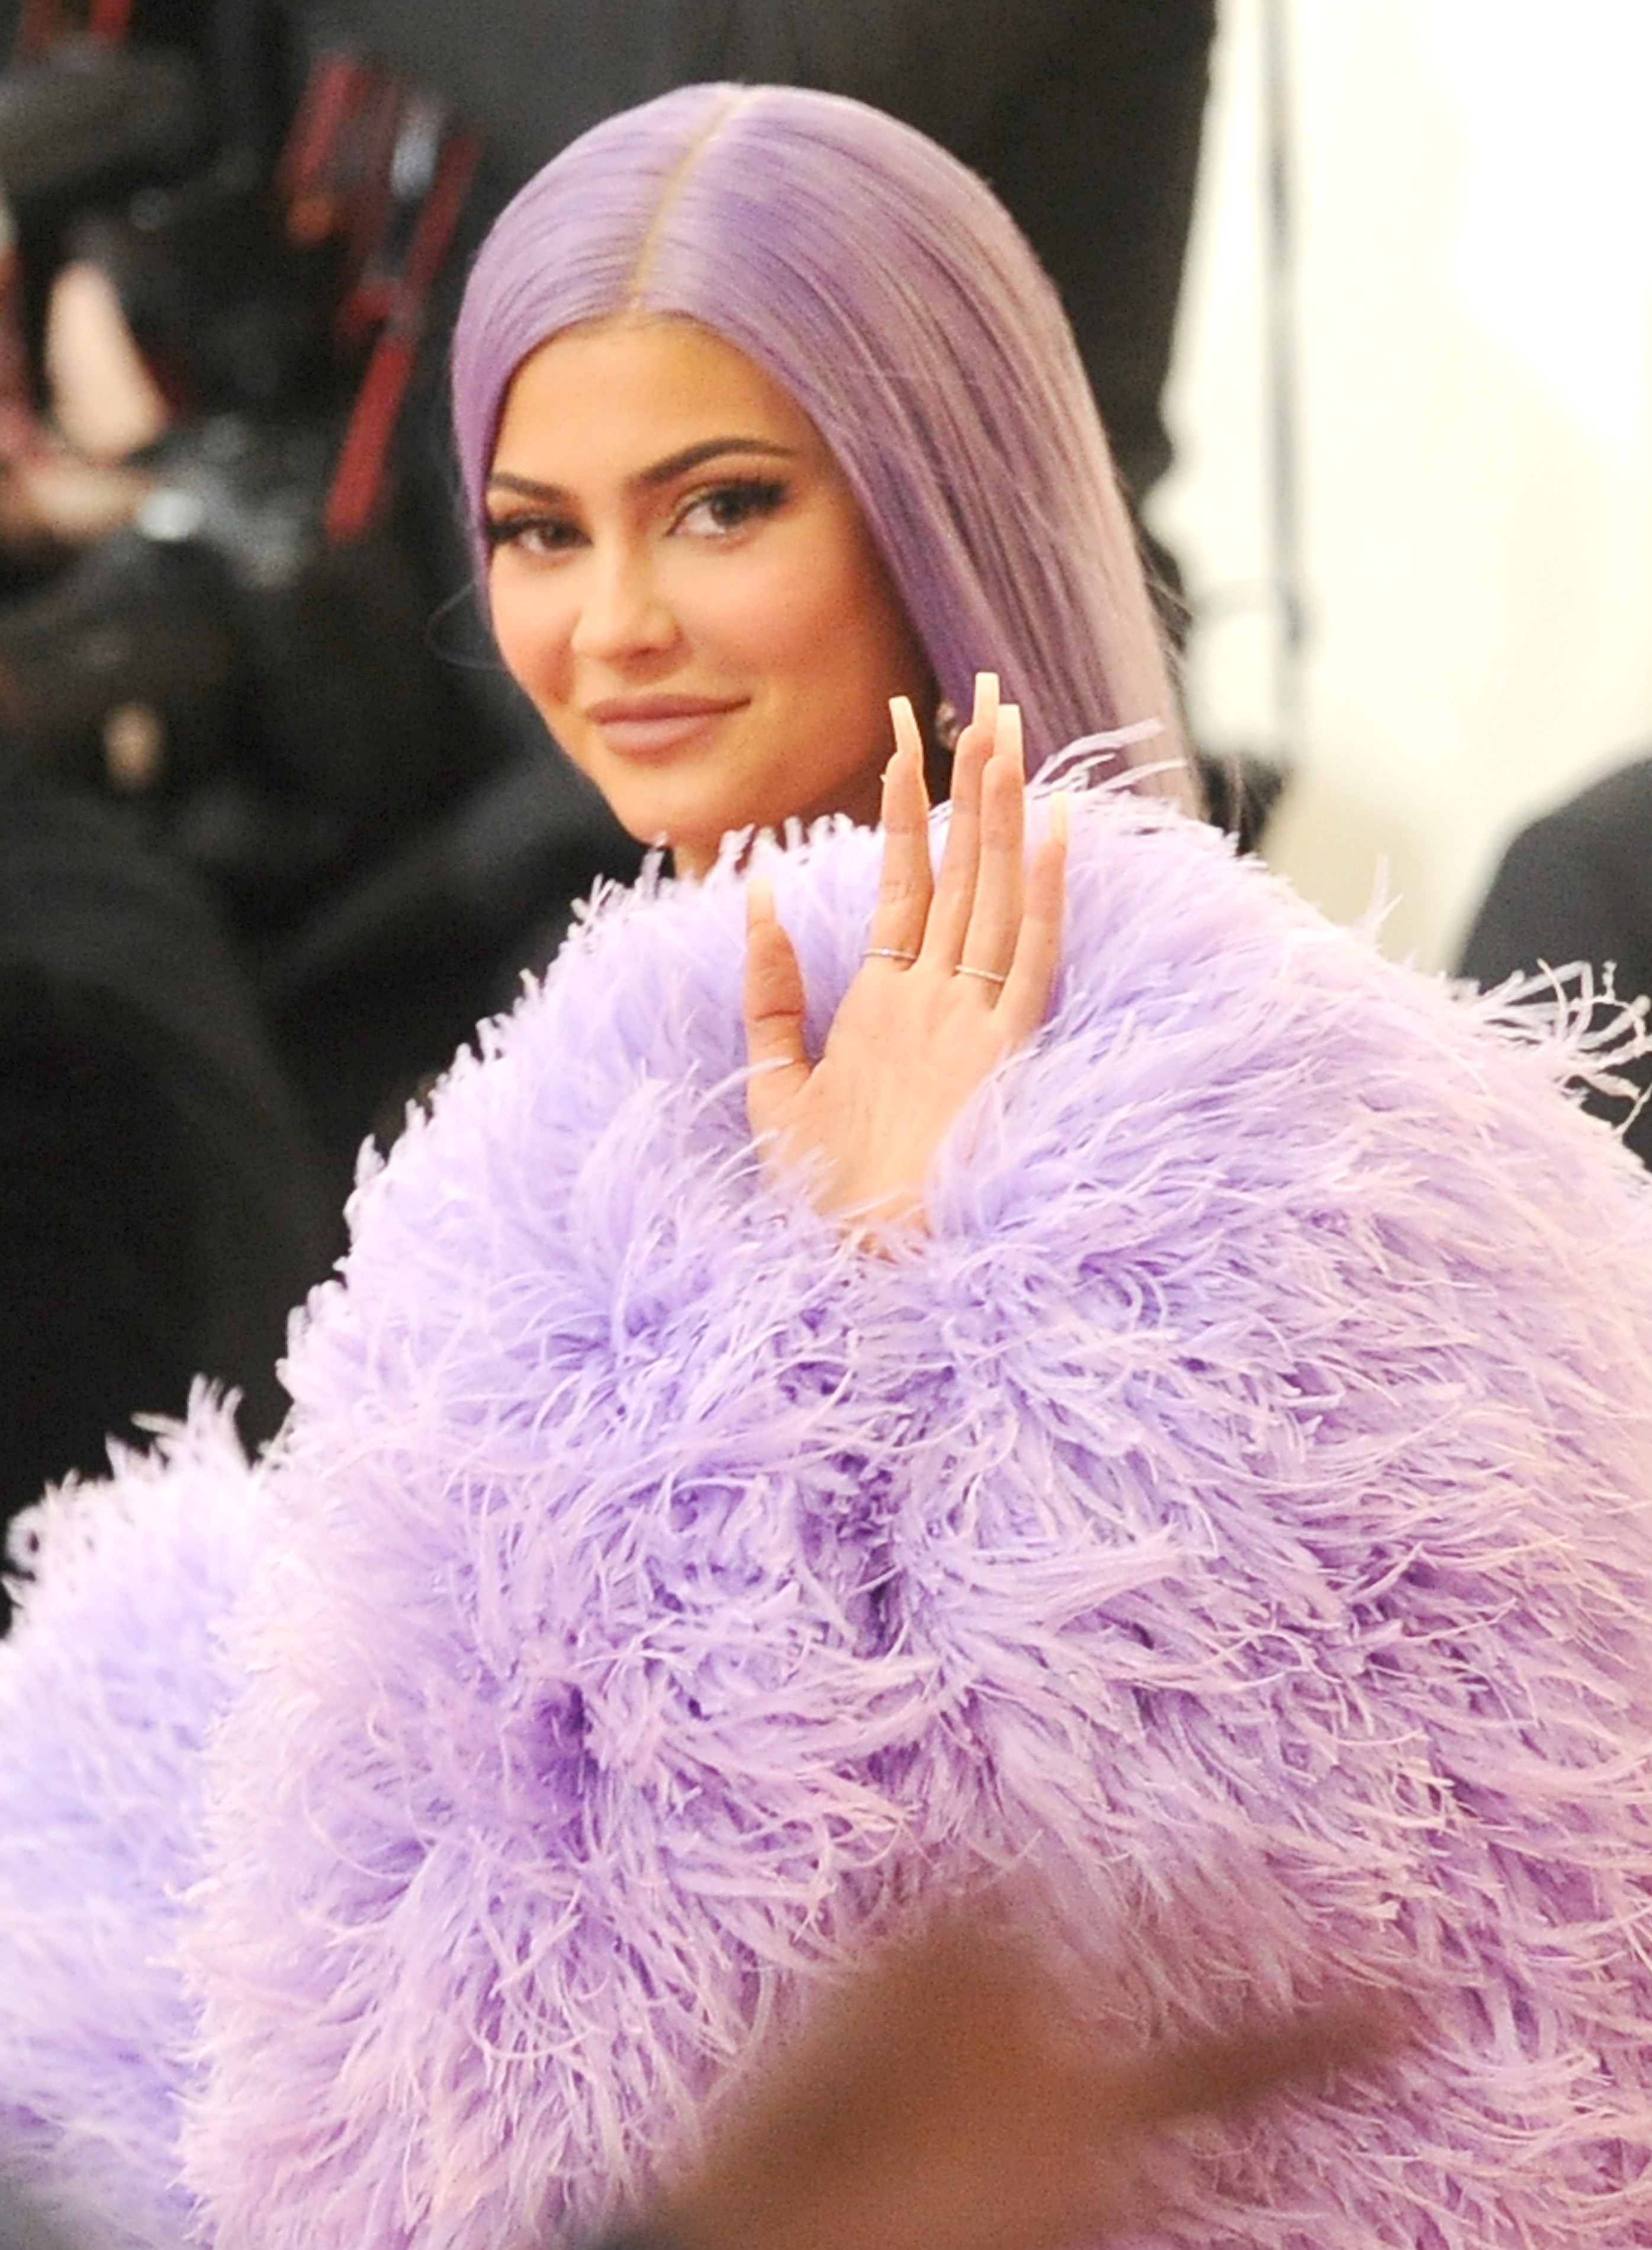 Είναι τα βερνίκια το επόμενο προϊόν που θα λανσάρει η Kylie Jenner;